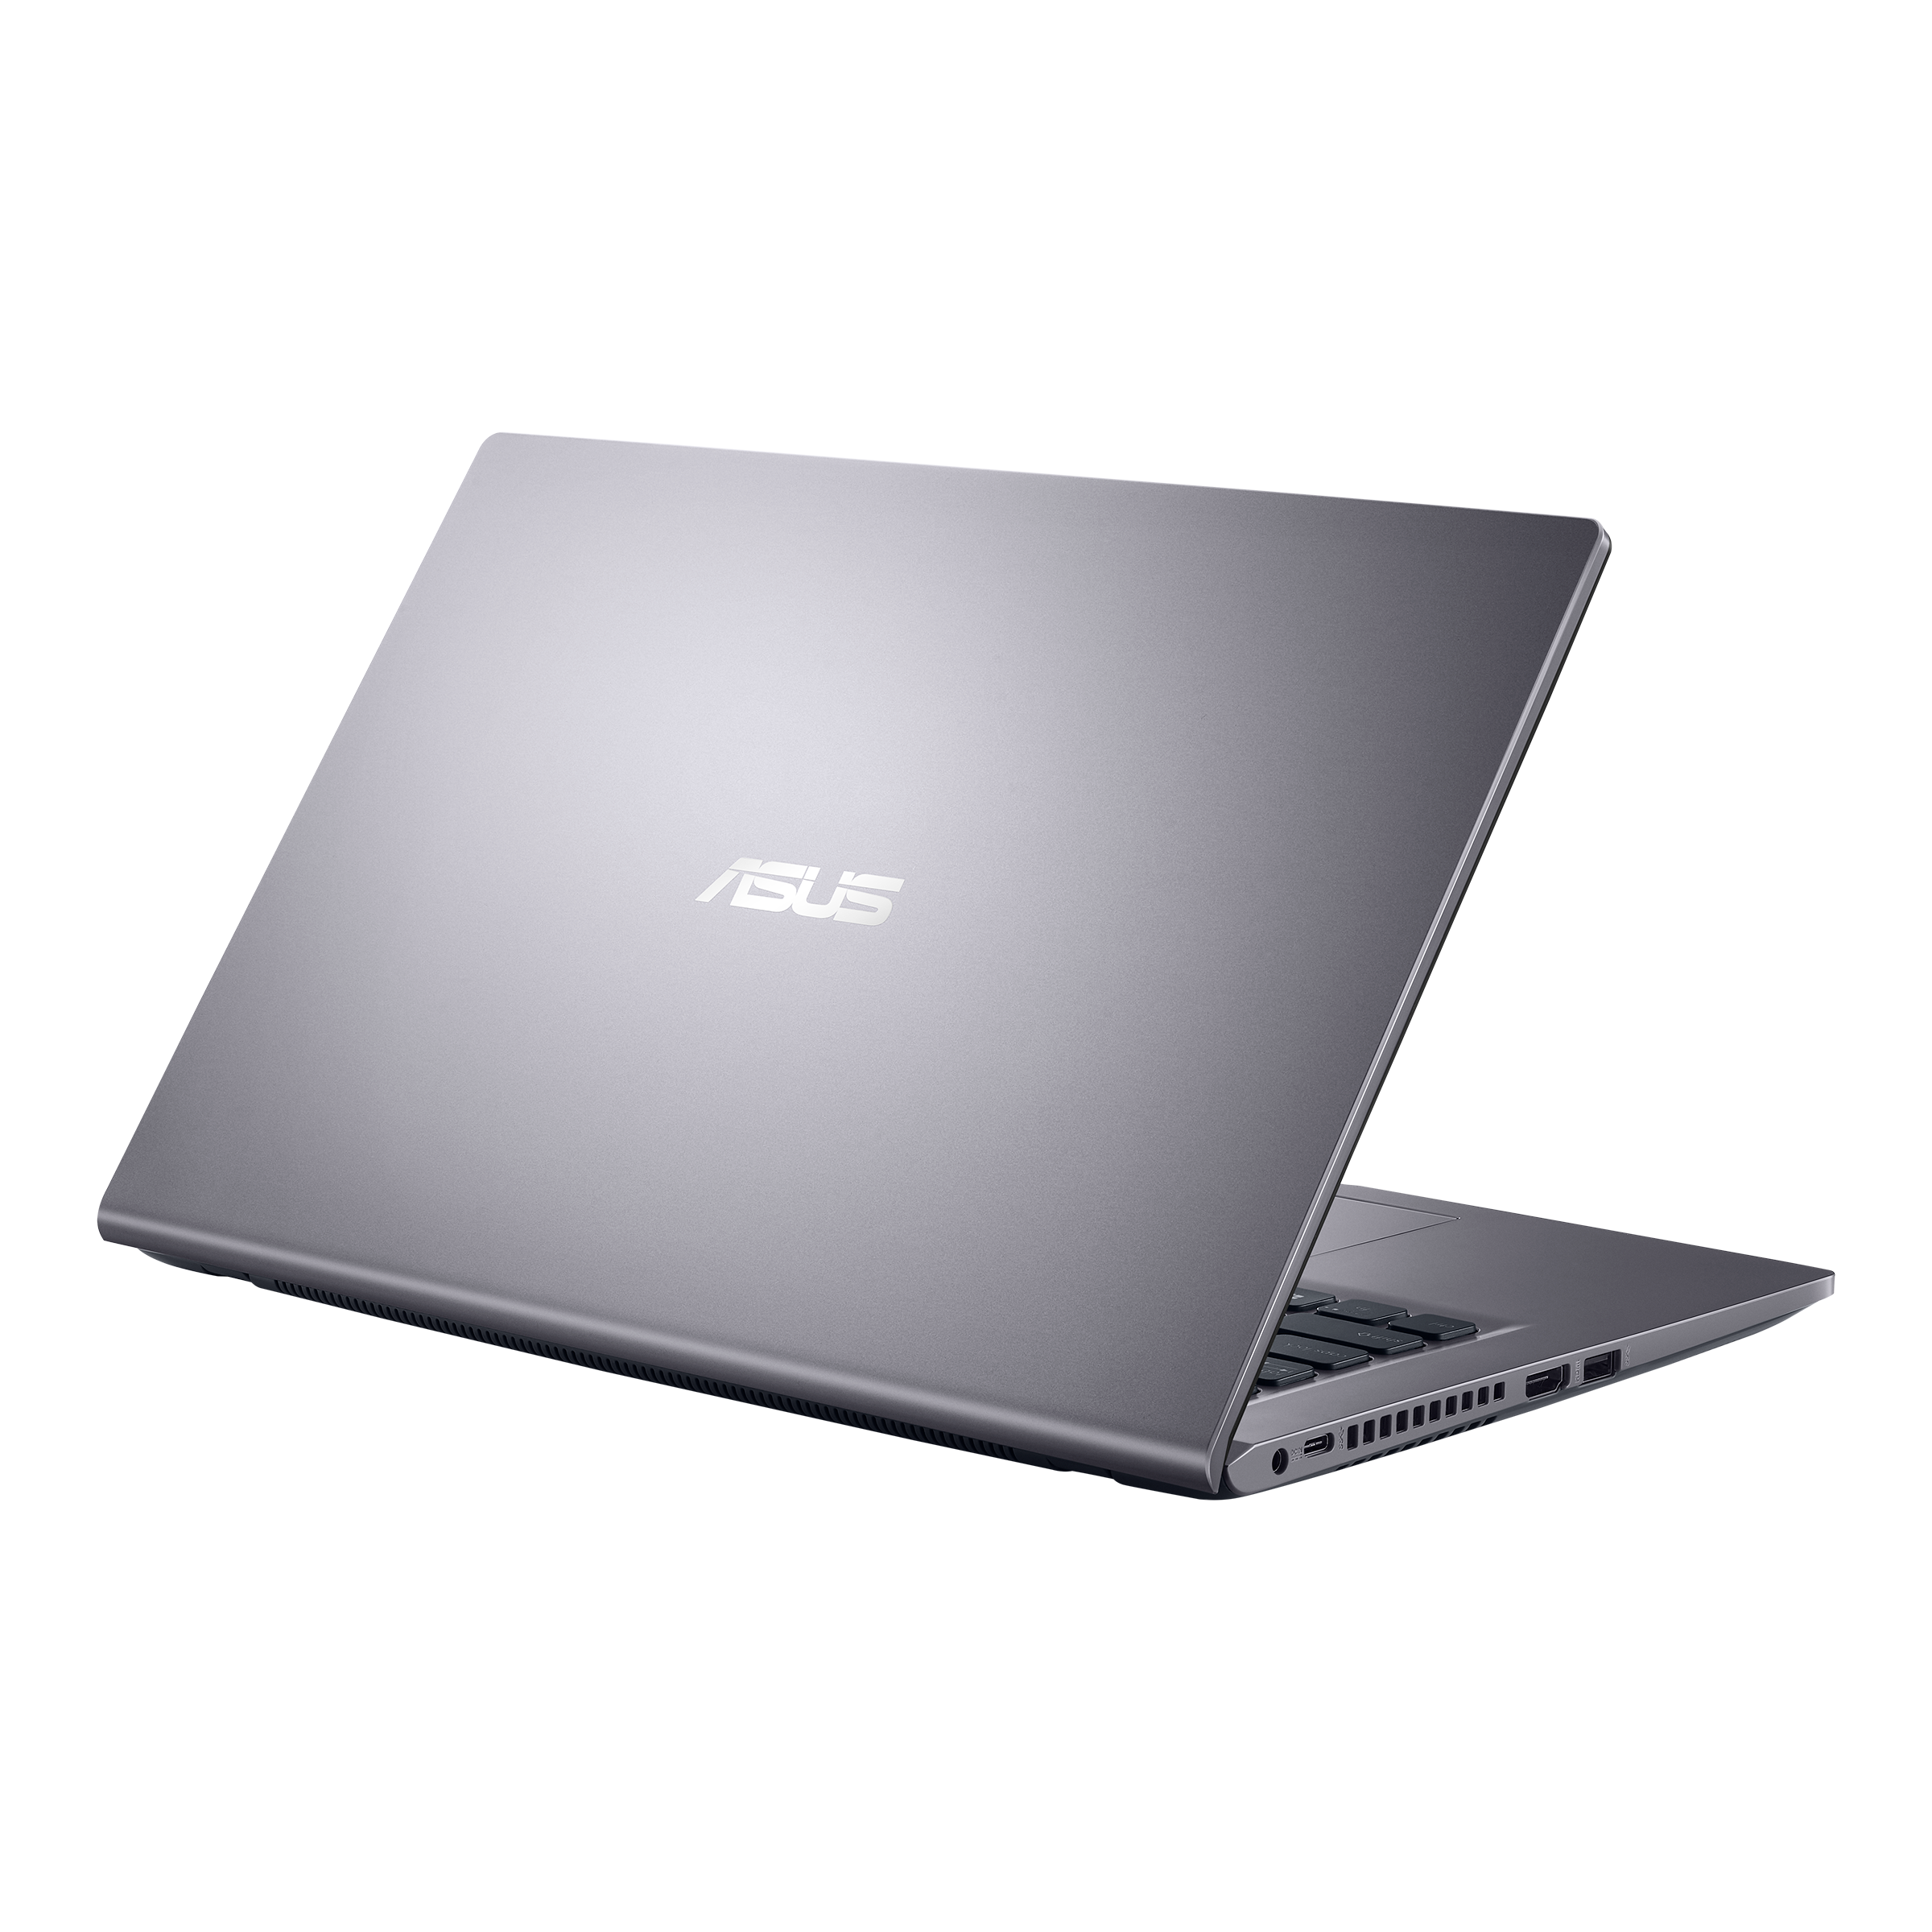 Asus X415EP-EB298W - Laptop Tiangge